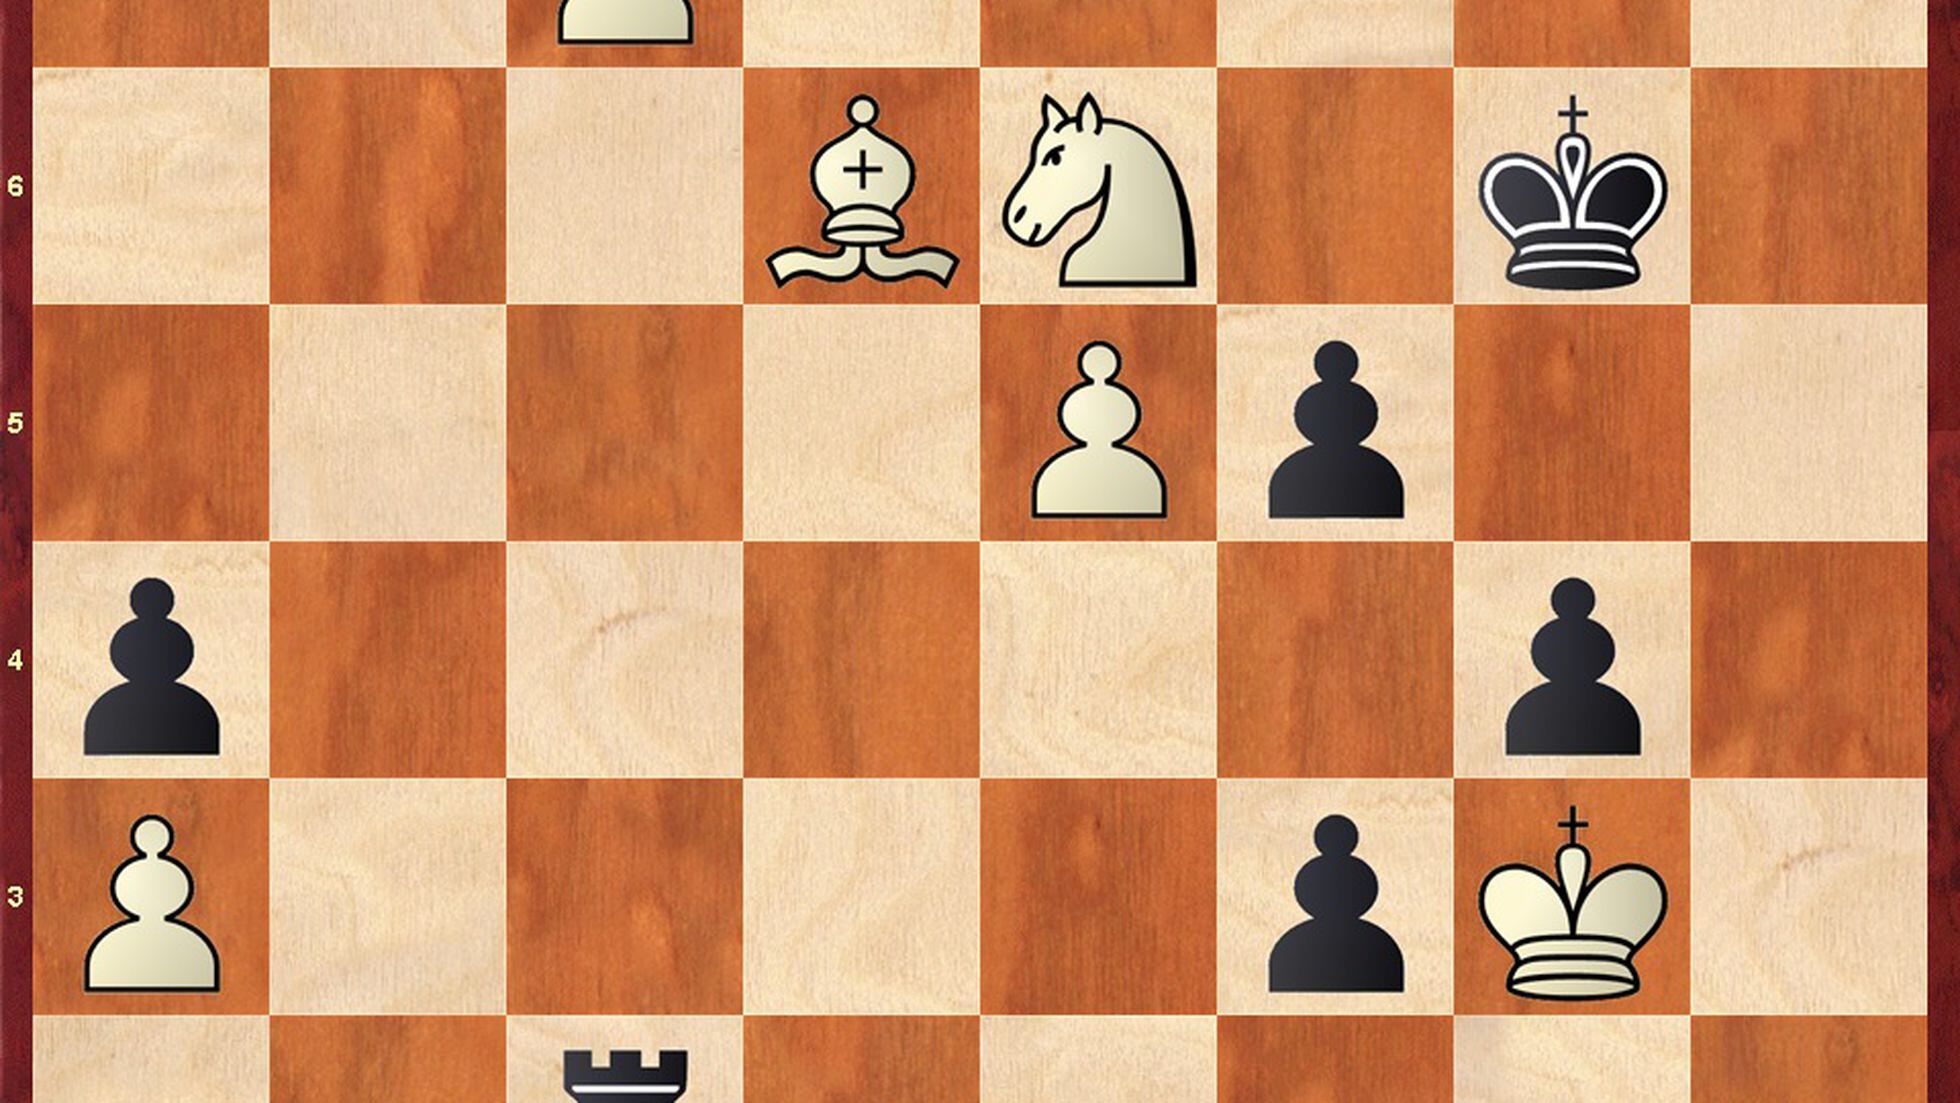 noticias - Firouzja-Carlsen para comenzar el Norway Chess